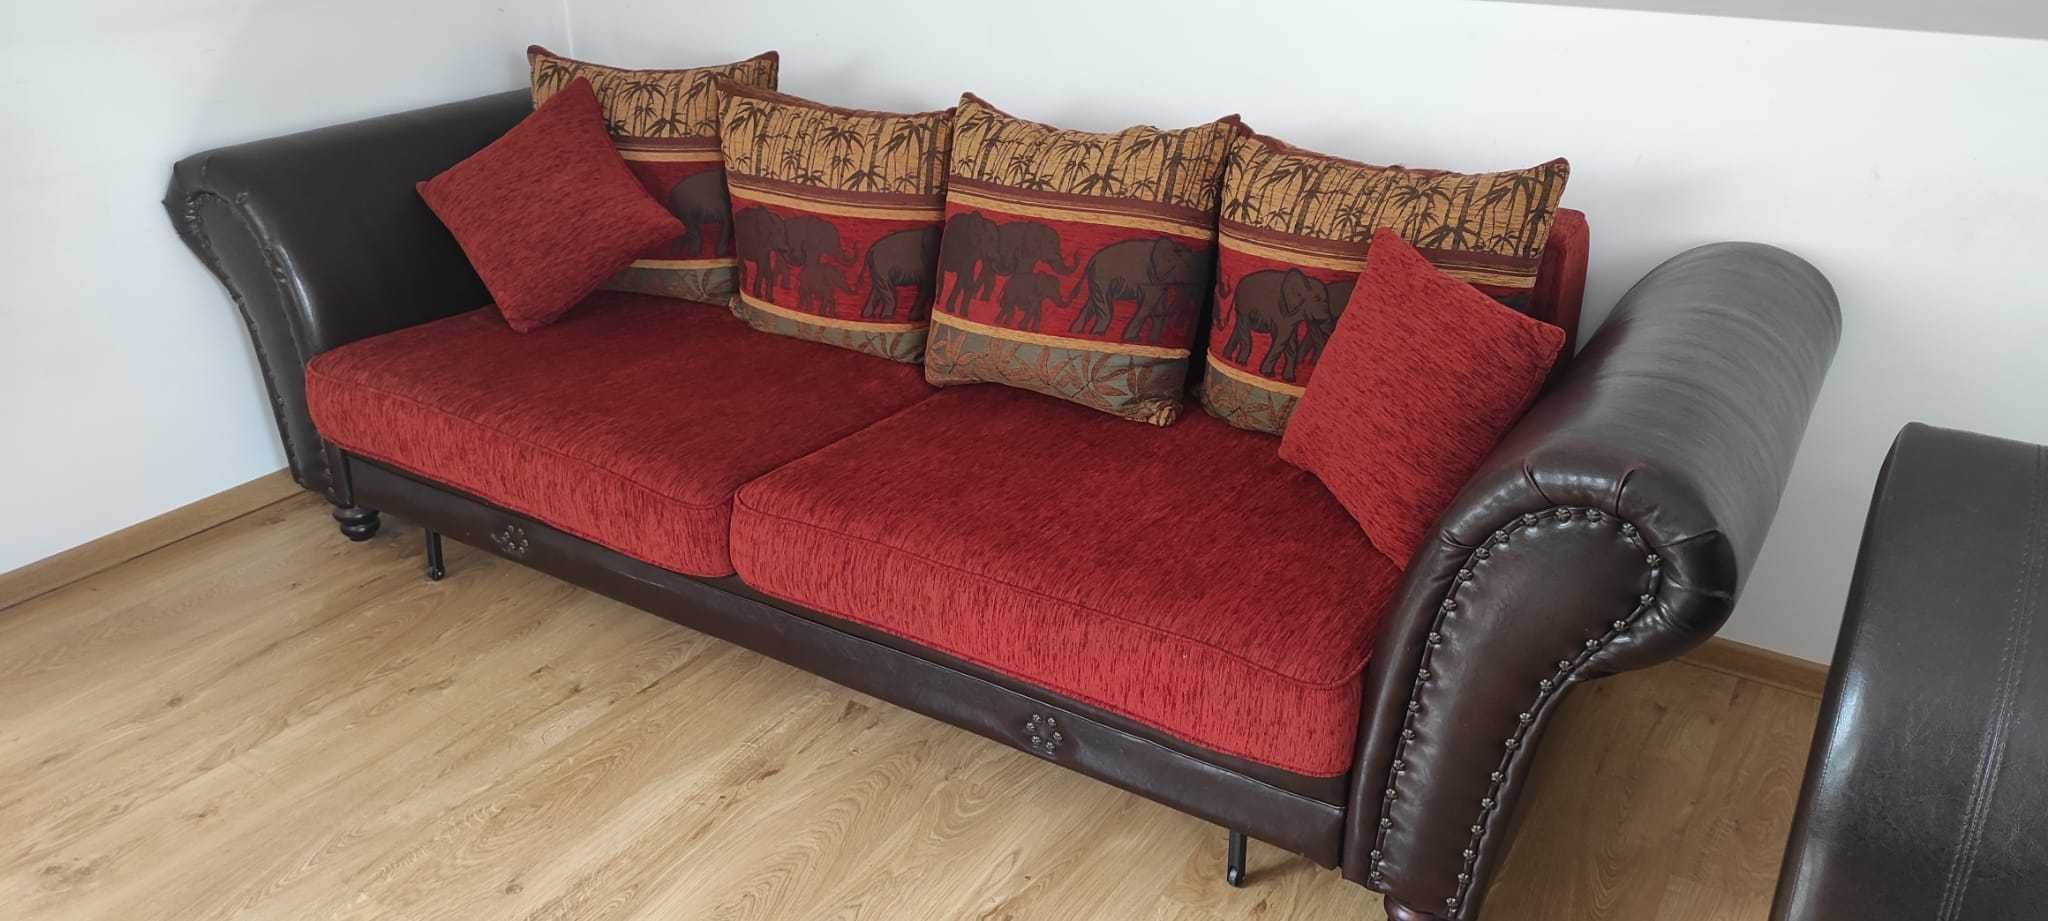 Duża sofa, kanapa - czerwony aksamit, styl kolonialny, orientalny